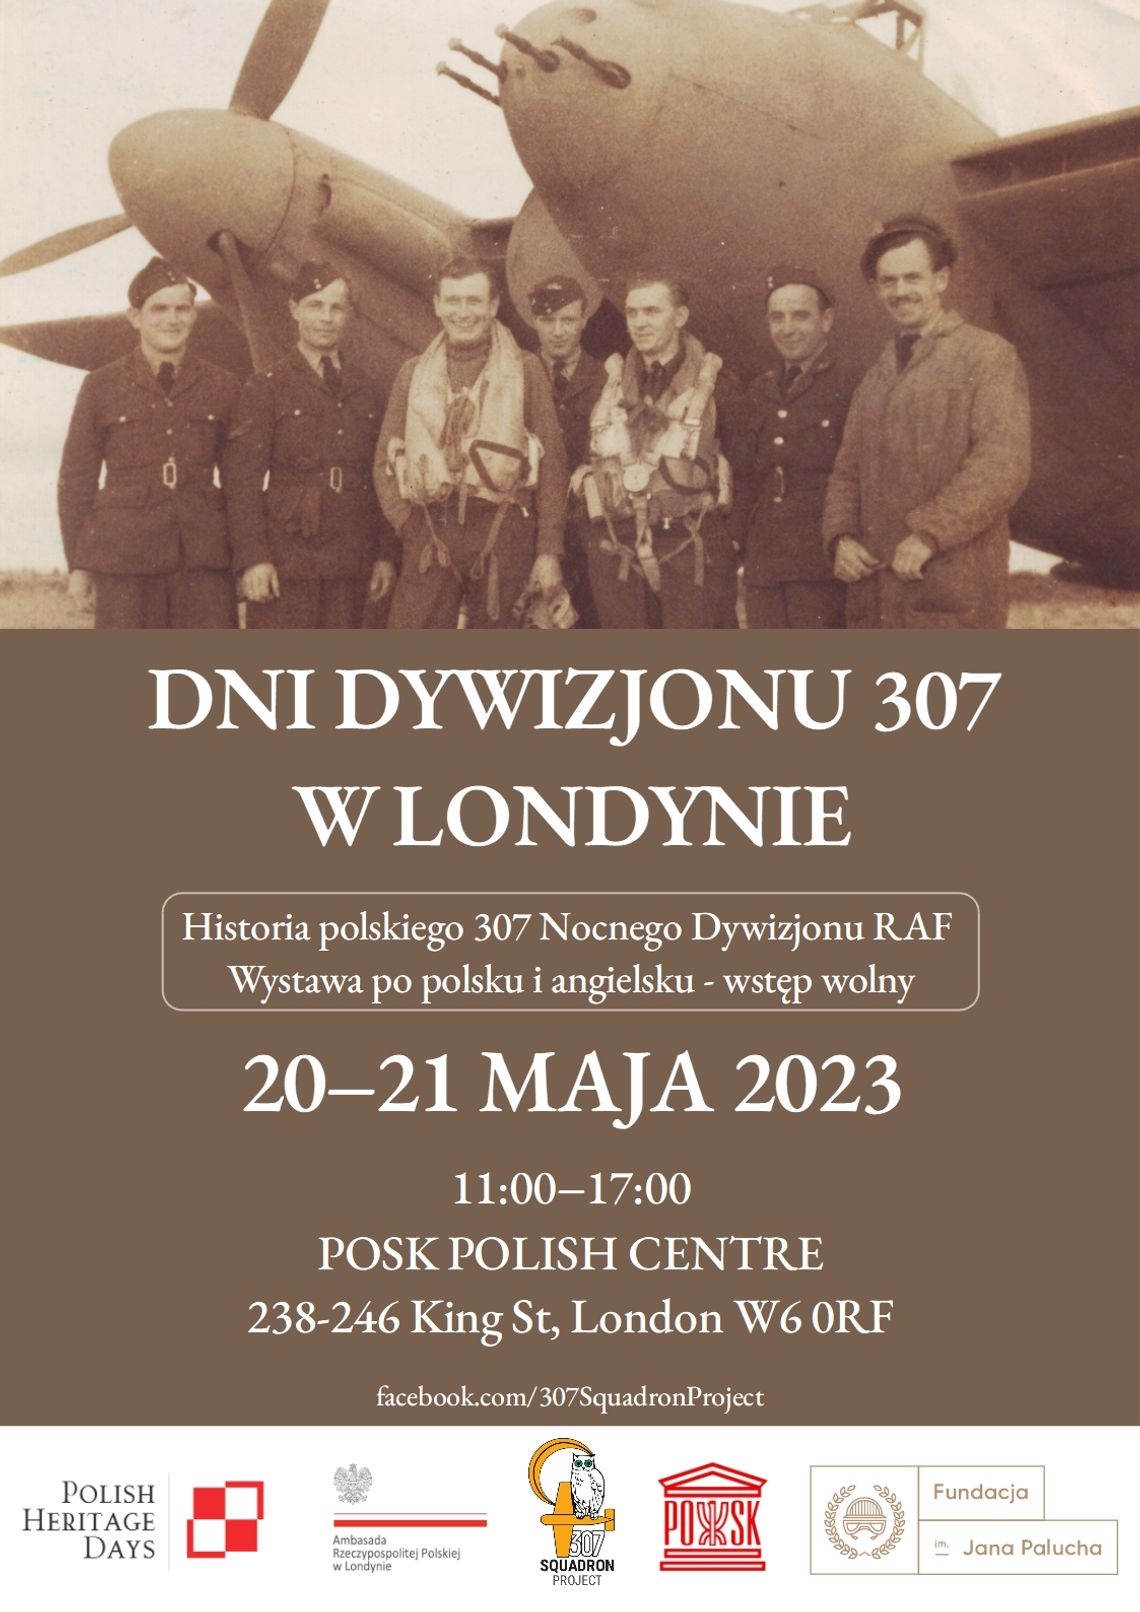 Wystawa poświęcona historii polskiego nocnego Dywizjonu 307